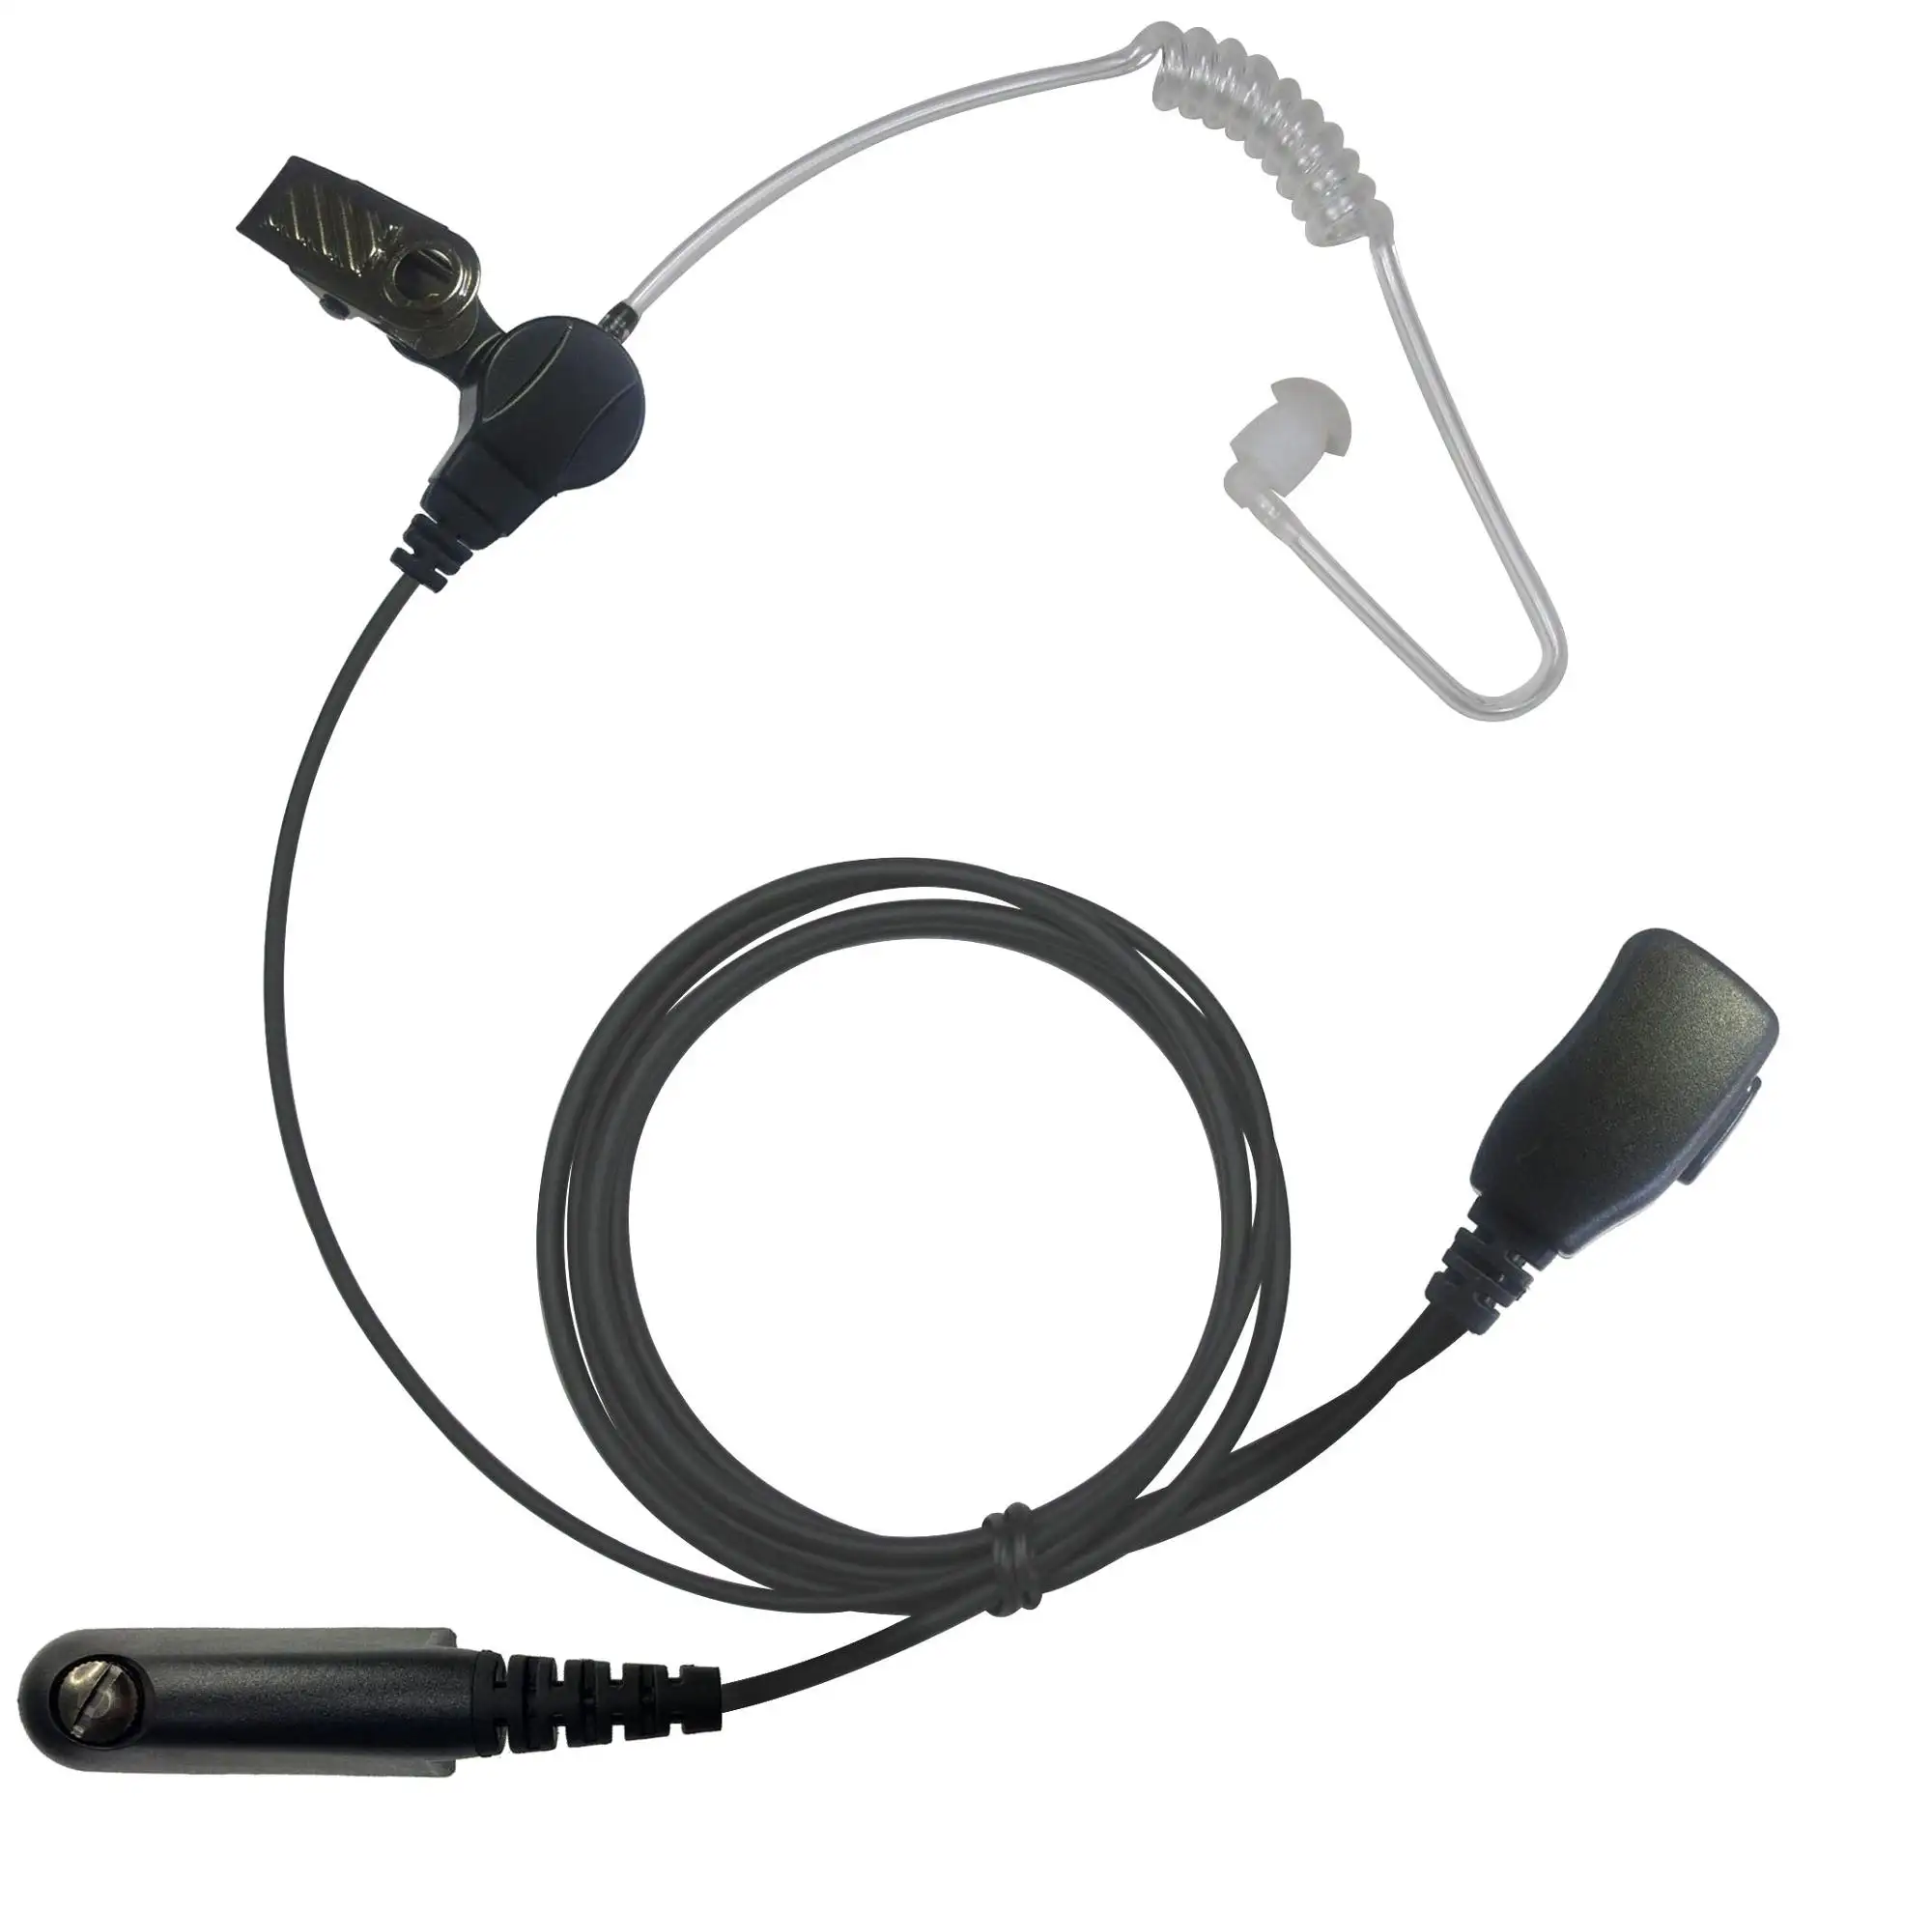 Clear Air Tube Mic,Vhf Handheld Radio Earpiece,Headset for Walkie Talkie GP328 GP338 GP380 GP340 For motorola